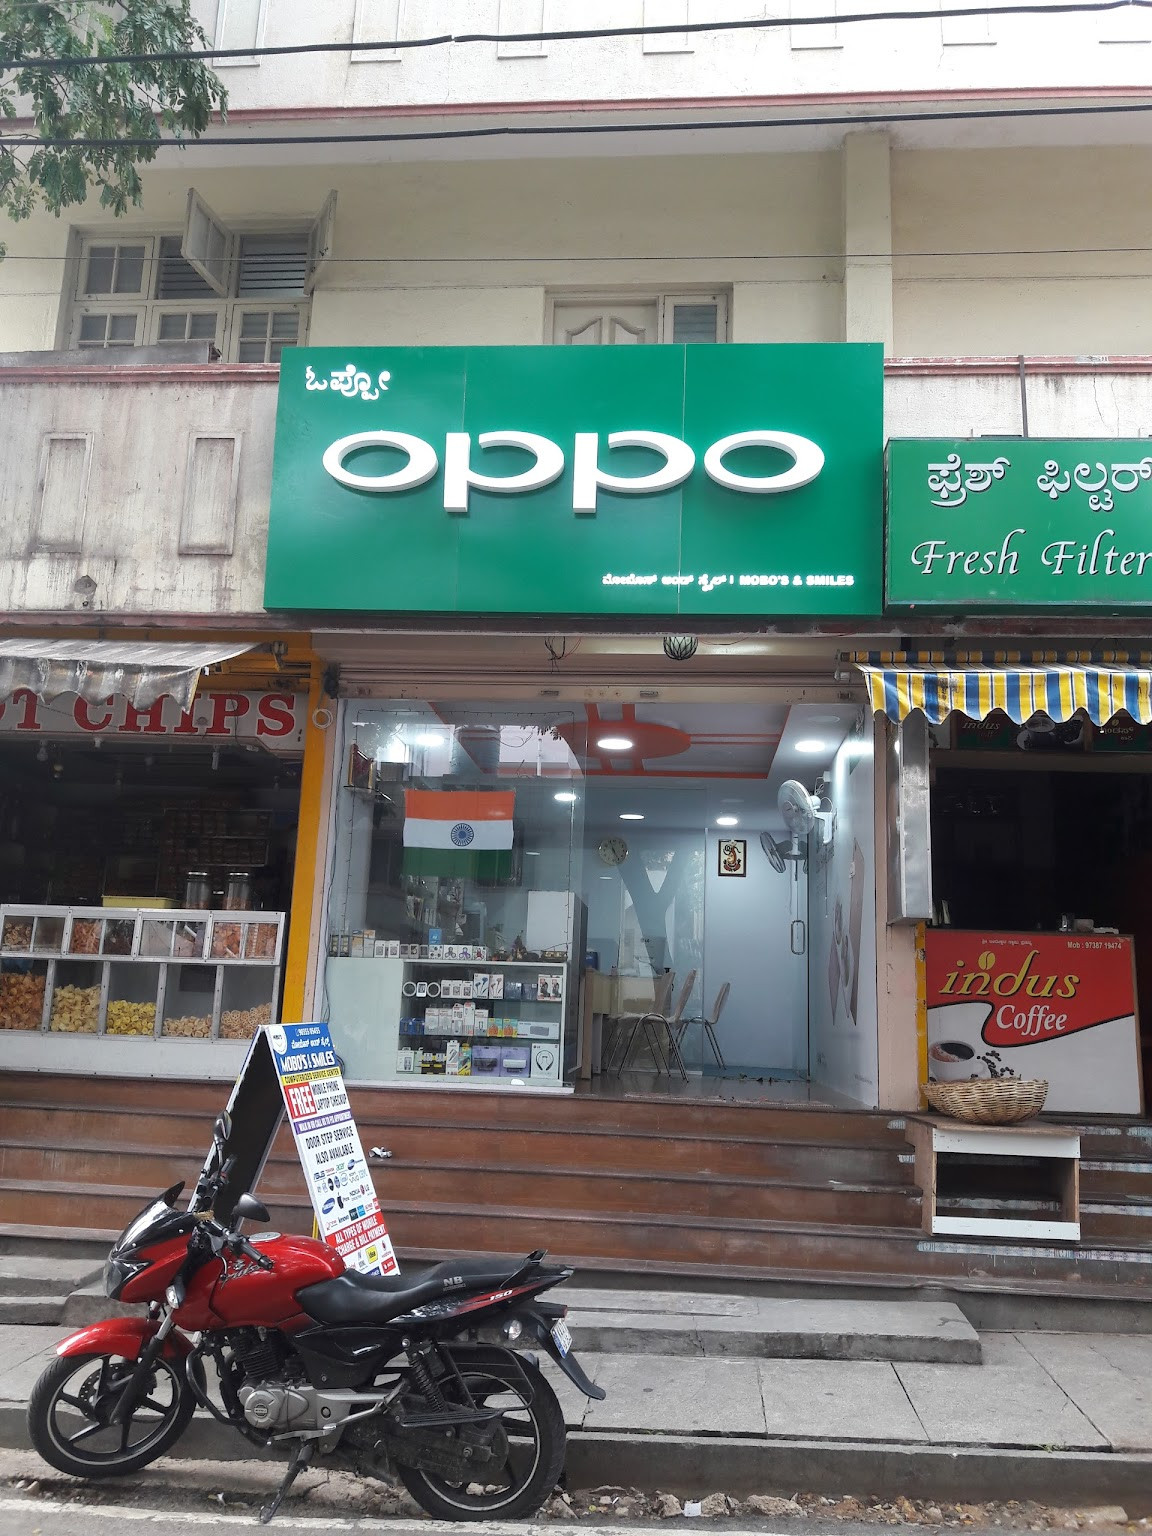 Me phone kedai repair near iPro Ampang